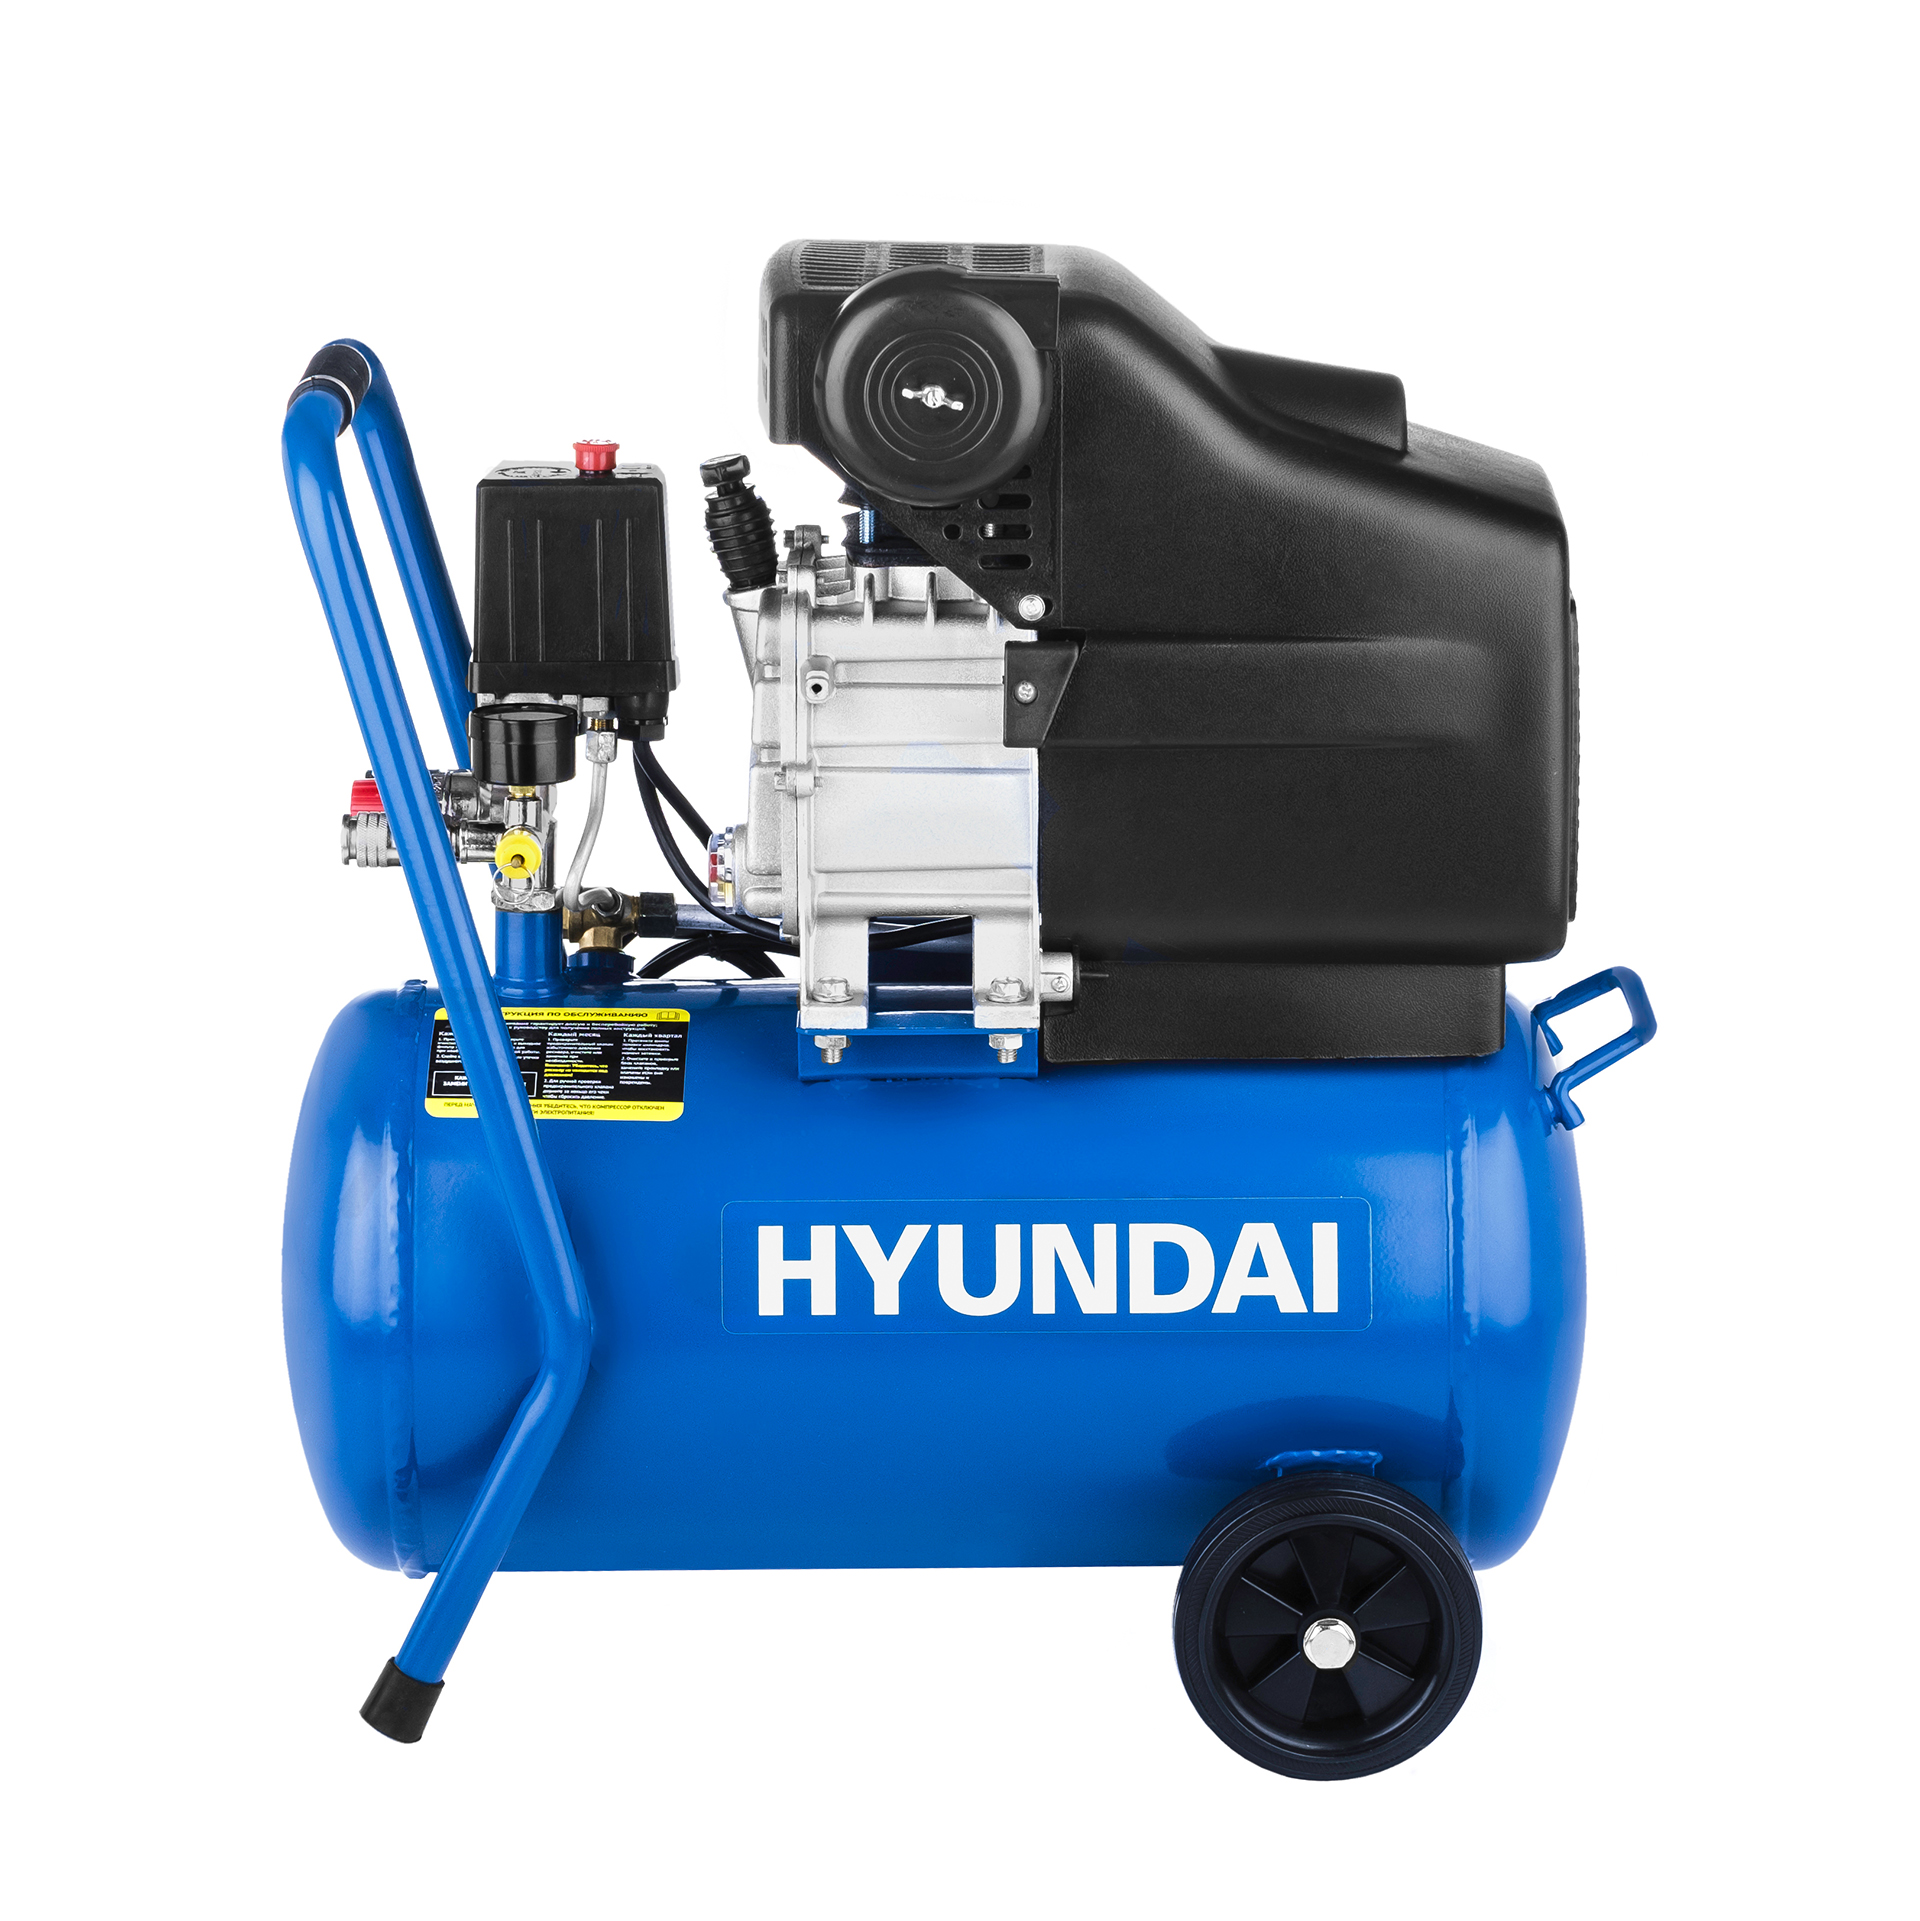 Воздушный компрессор масляный Hyundai HYC 2324 компрессор масляный воздушный fubag dc 320 24 cm2 5 614319530